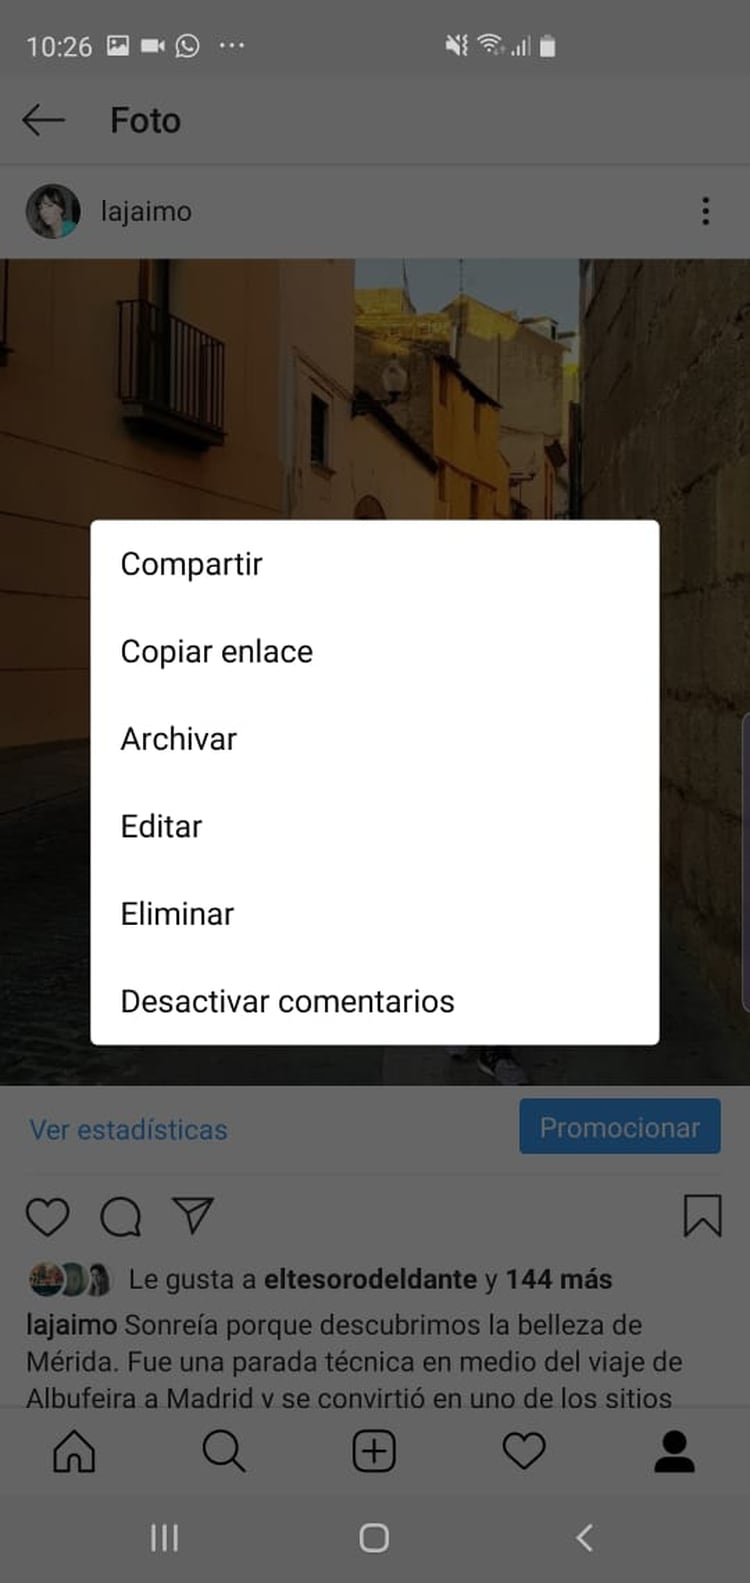 La opción “archivar” quita el contenido del feed y lo guarda en una carpeta privada.